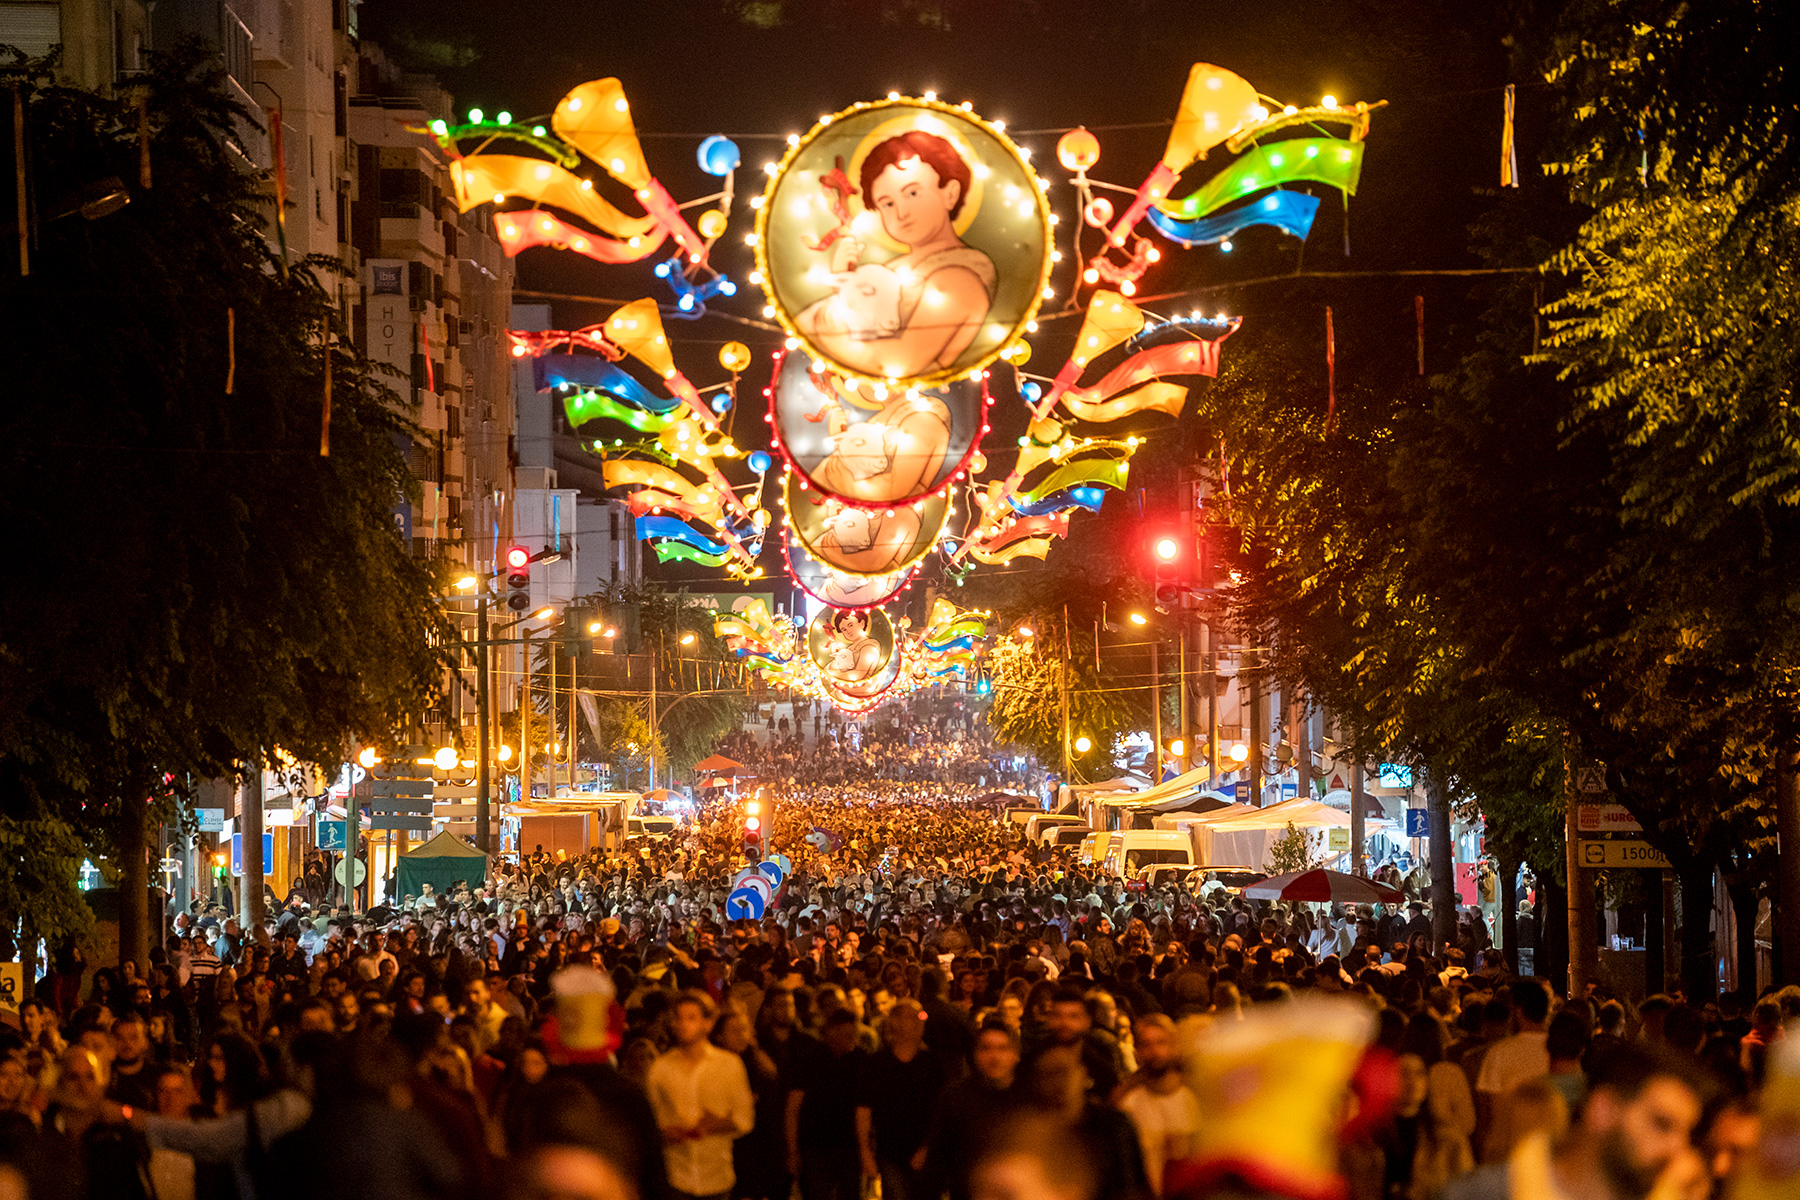 A Maior Festa Popular de Portugal